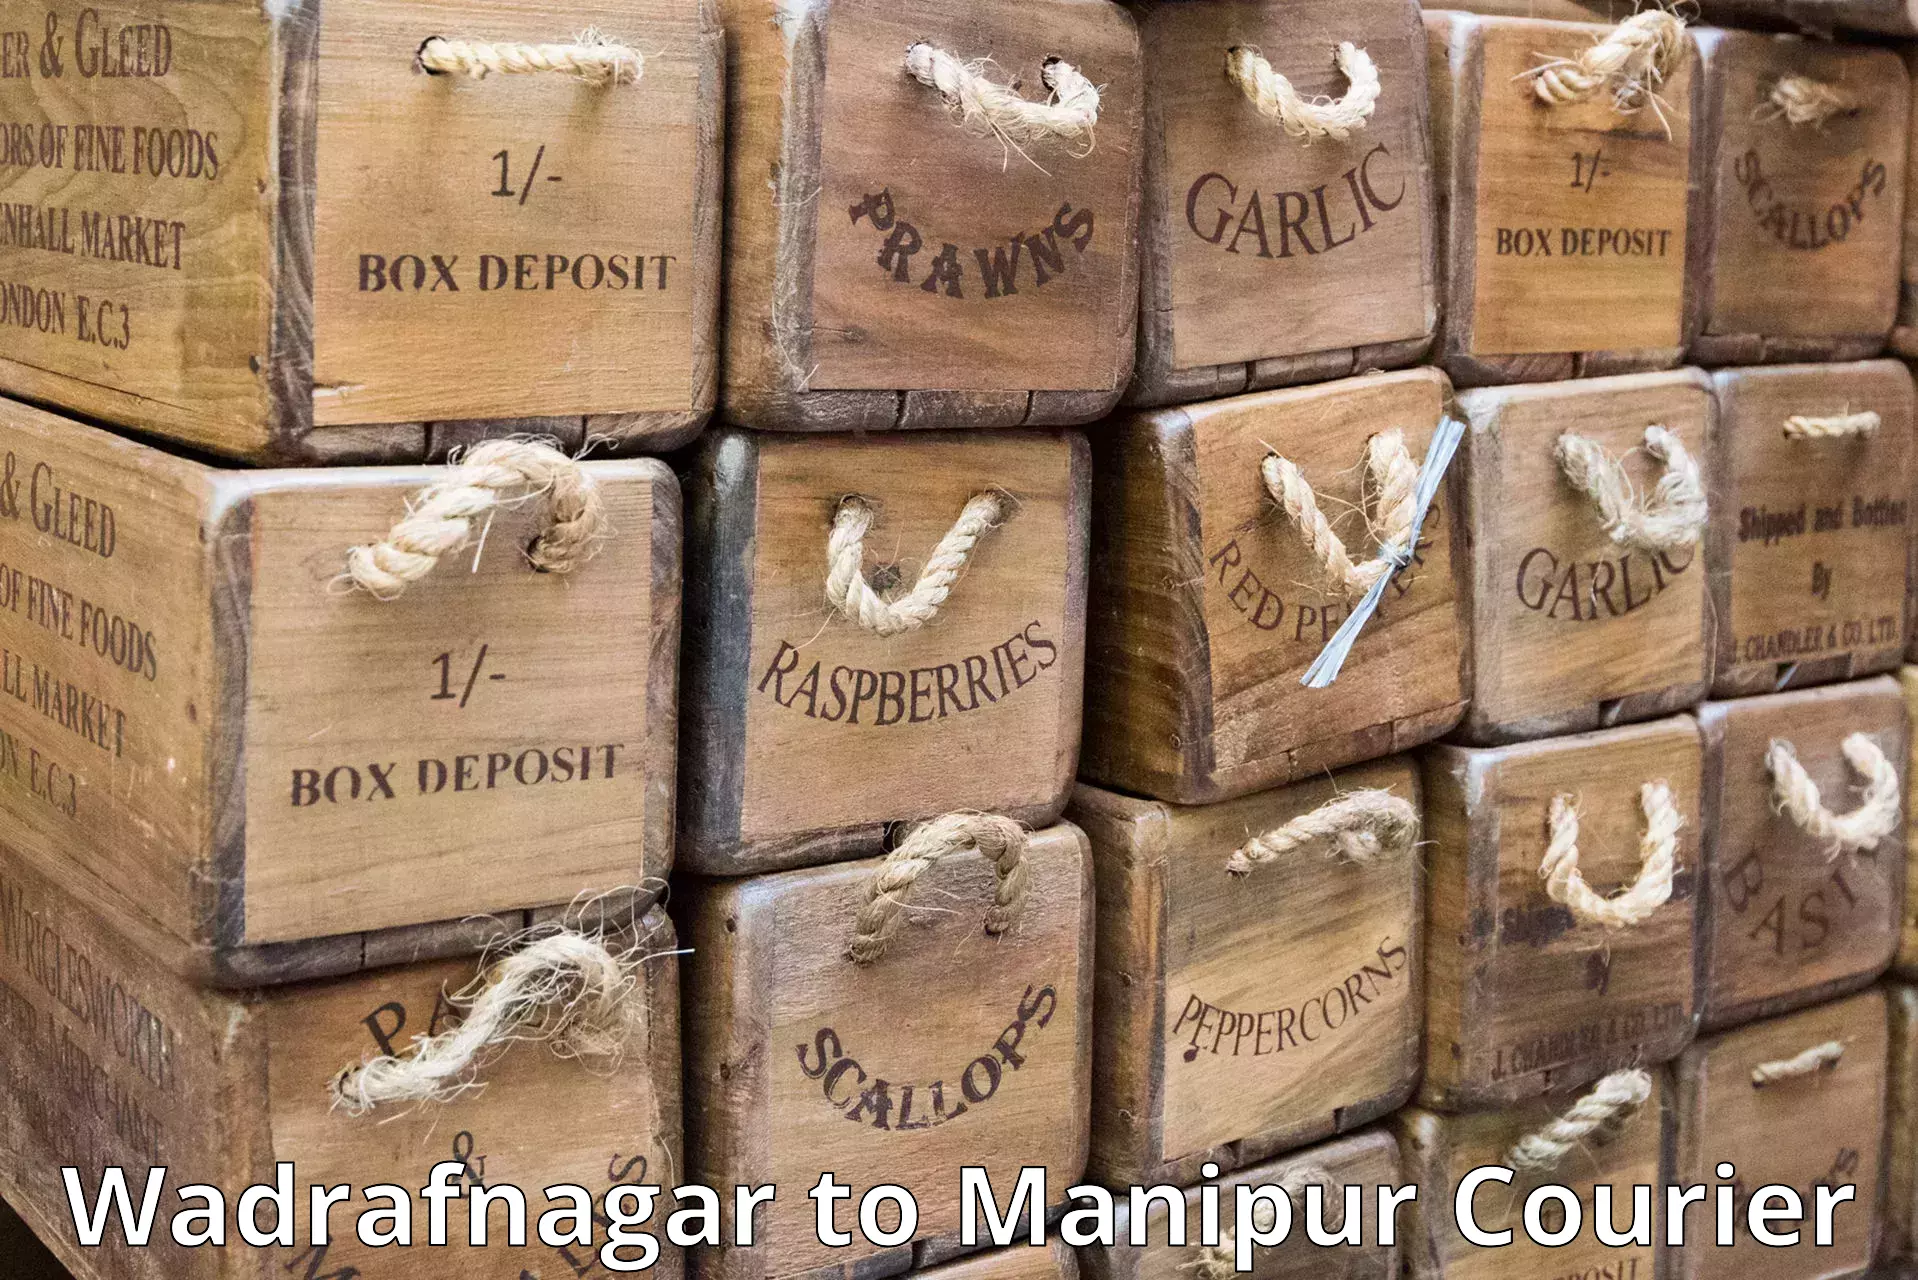 Lightweight parcel options Wadrafnagar to Churachandpur